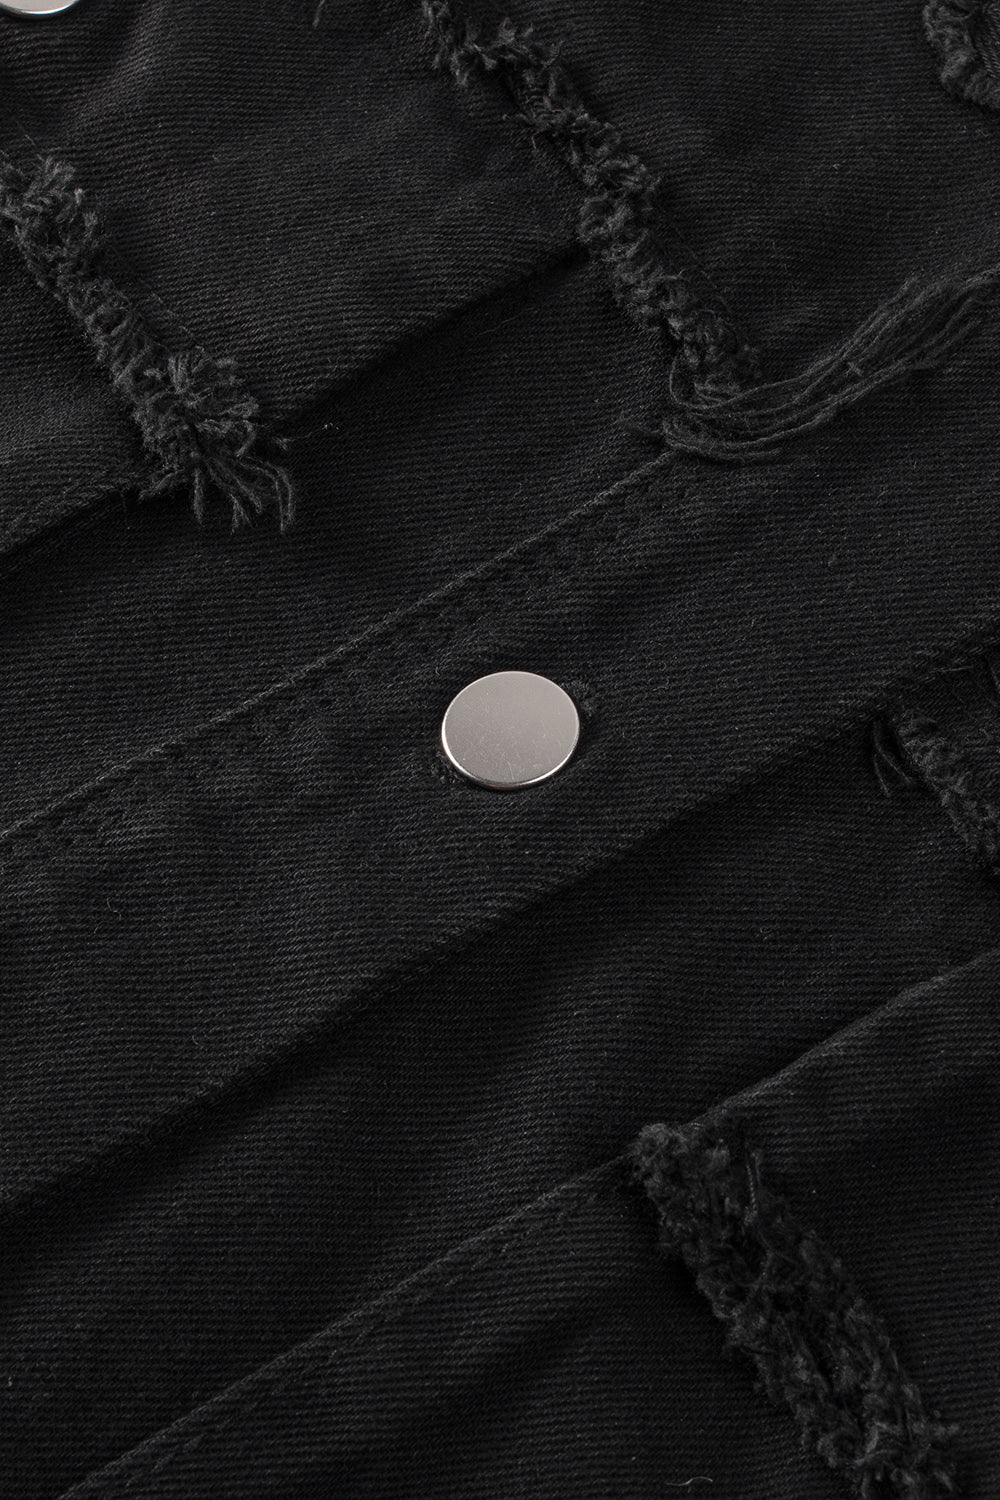 Giacca di jeans con orlo grezzo e tasca con maniche in paillettes nere